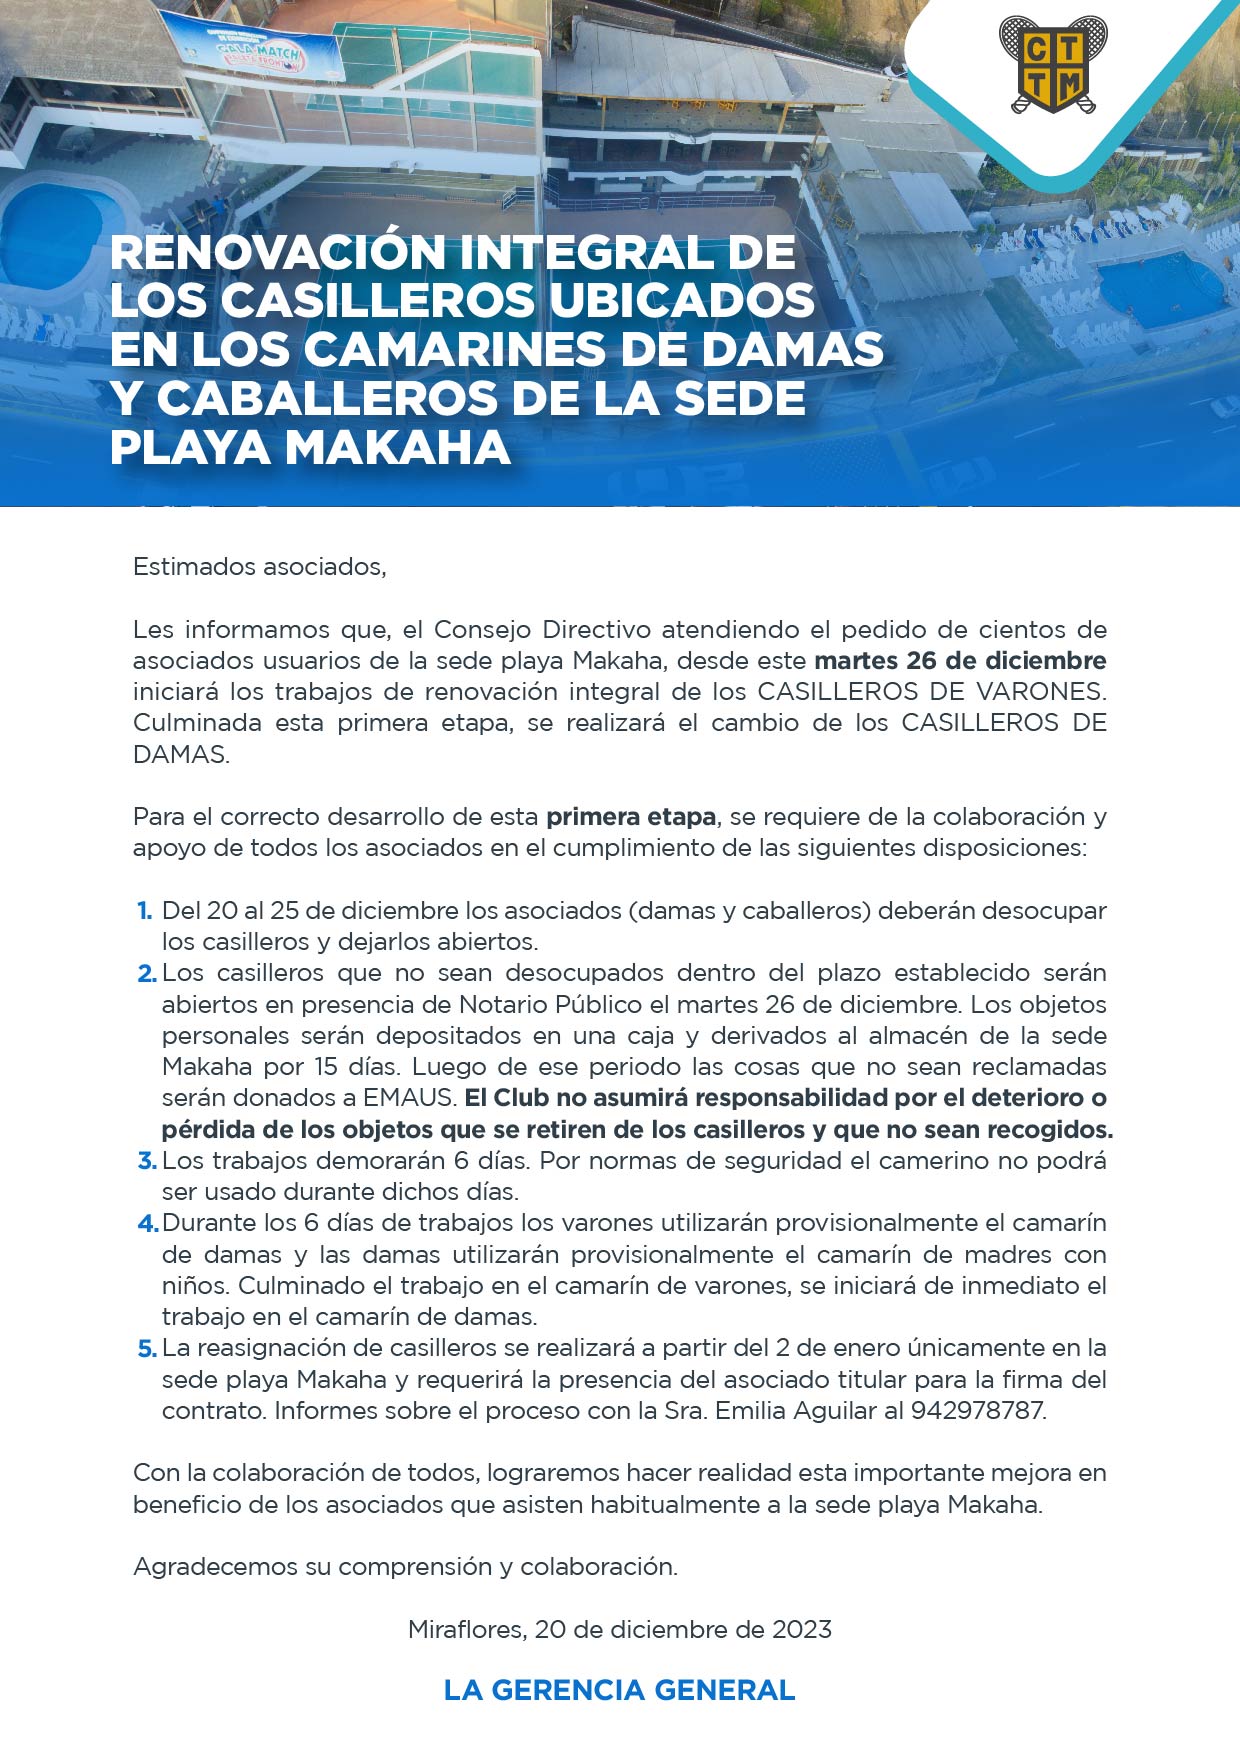 RENOVACIÓN INTEGRAL DE LOS CASILLEROS UBICADOS EN LOS CAMARINES DE DAMAS Y CABALLEROS DE LA SEDE PLAYA MAKAHA 